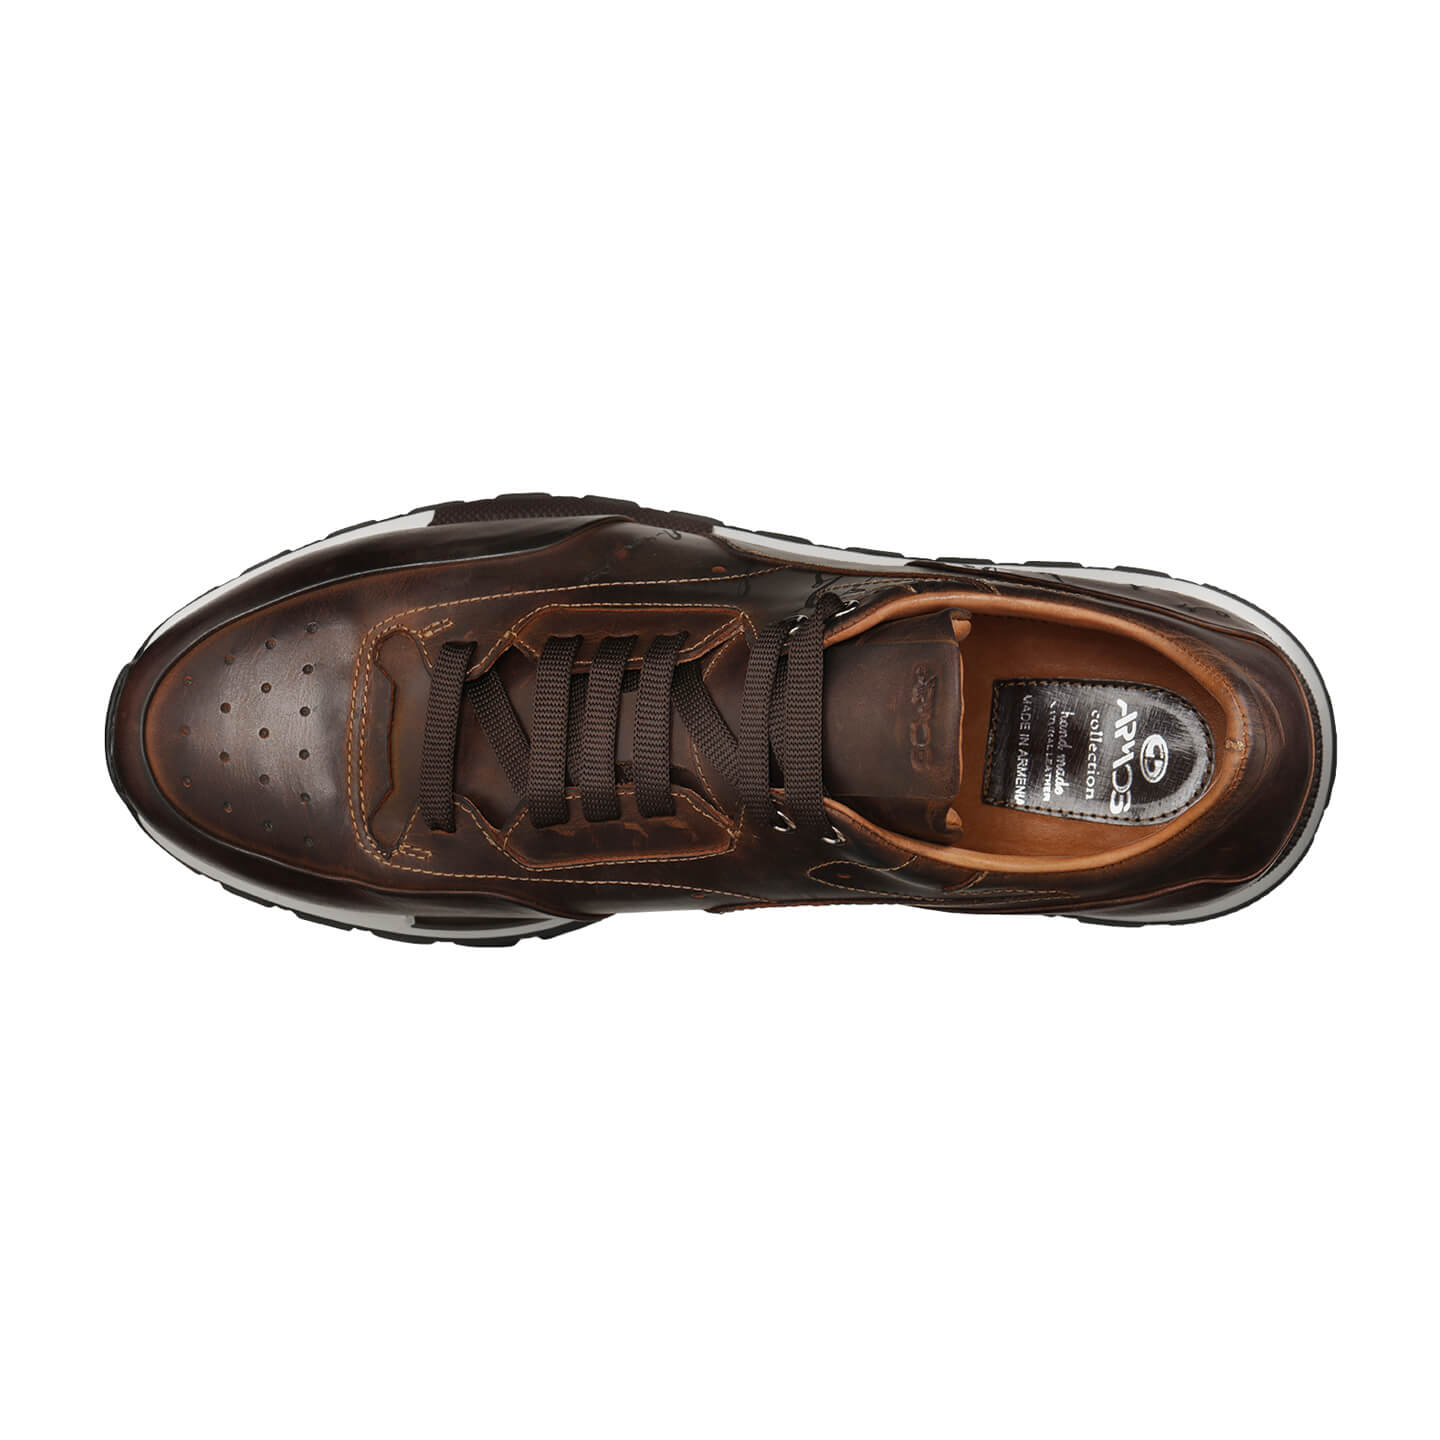 Painted brown sneakers